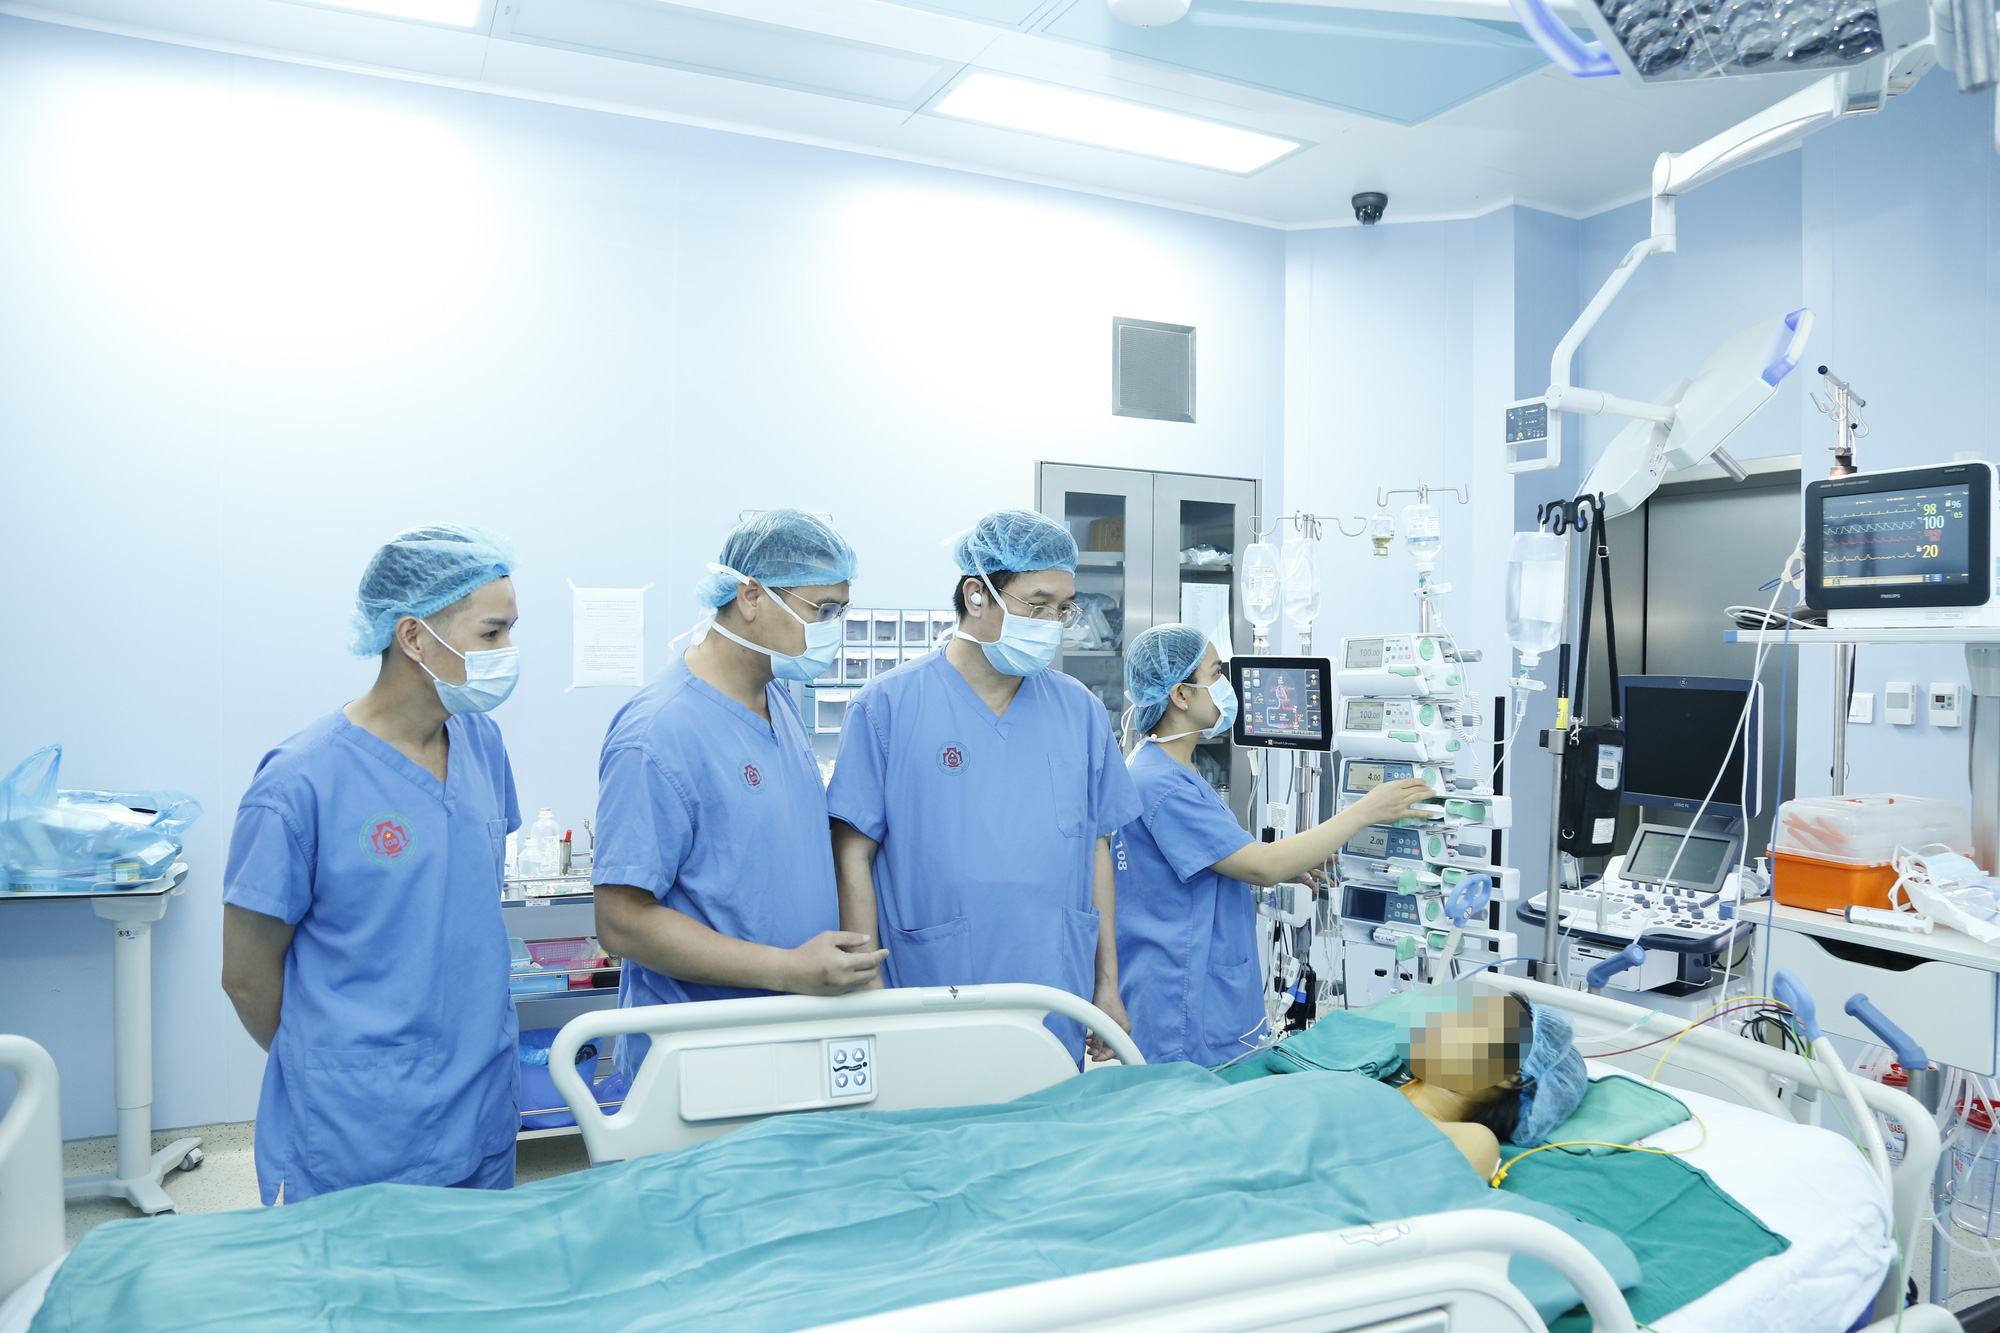 Bệnh viện TWQĐ 108 thực hiện thành công 108 ca ghép gan và nhận chứng nhận thành viên của Hiệp hội phẫu thuật Hoàng gia Anh - Ảnh 1.